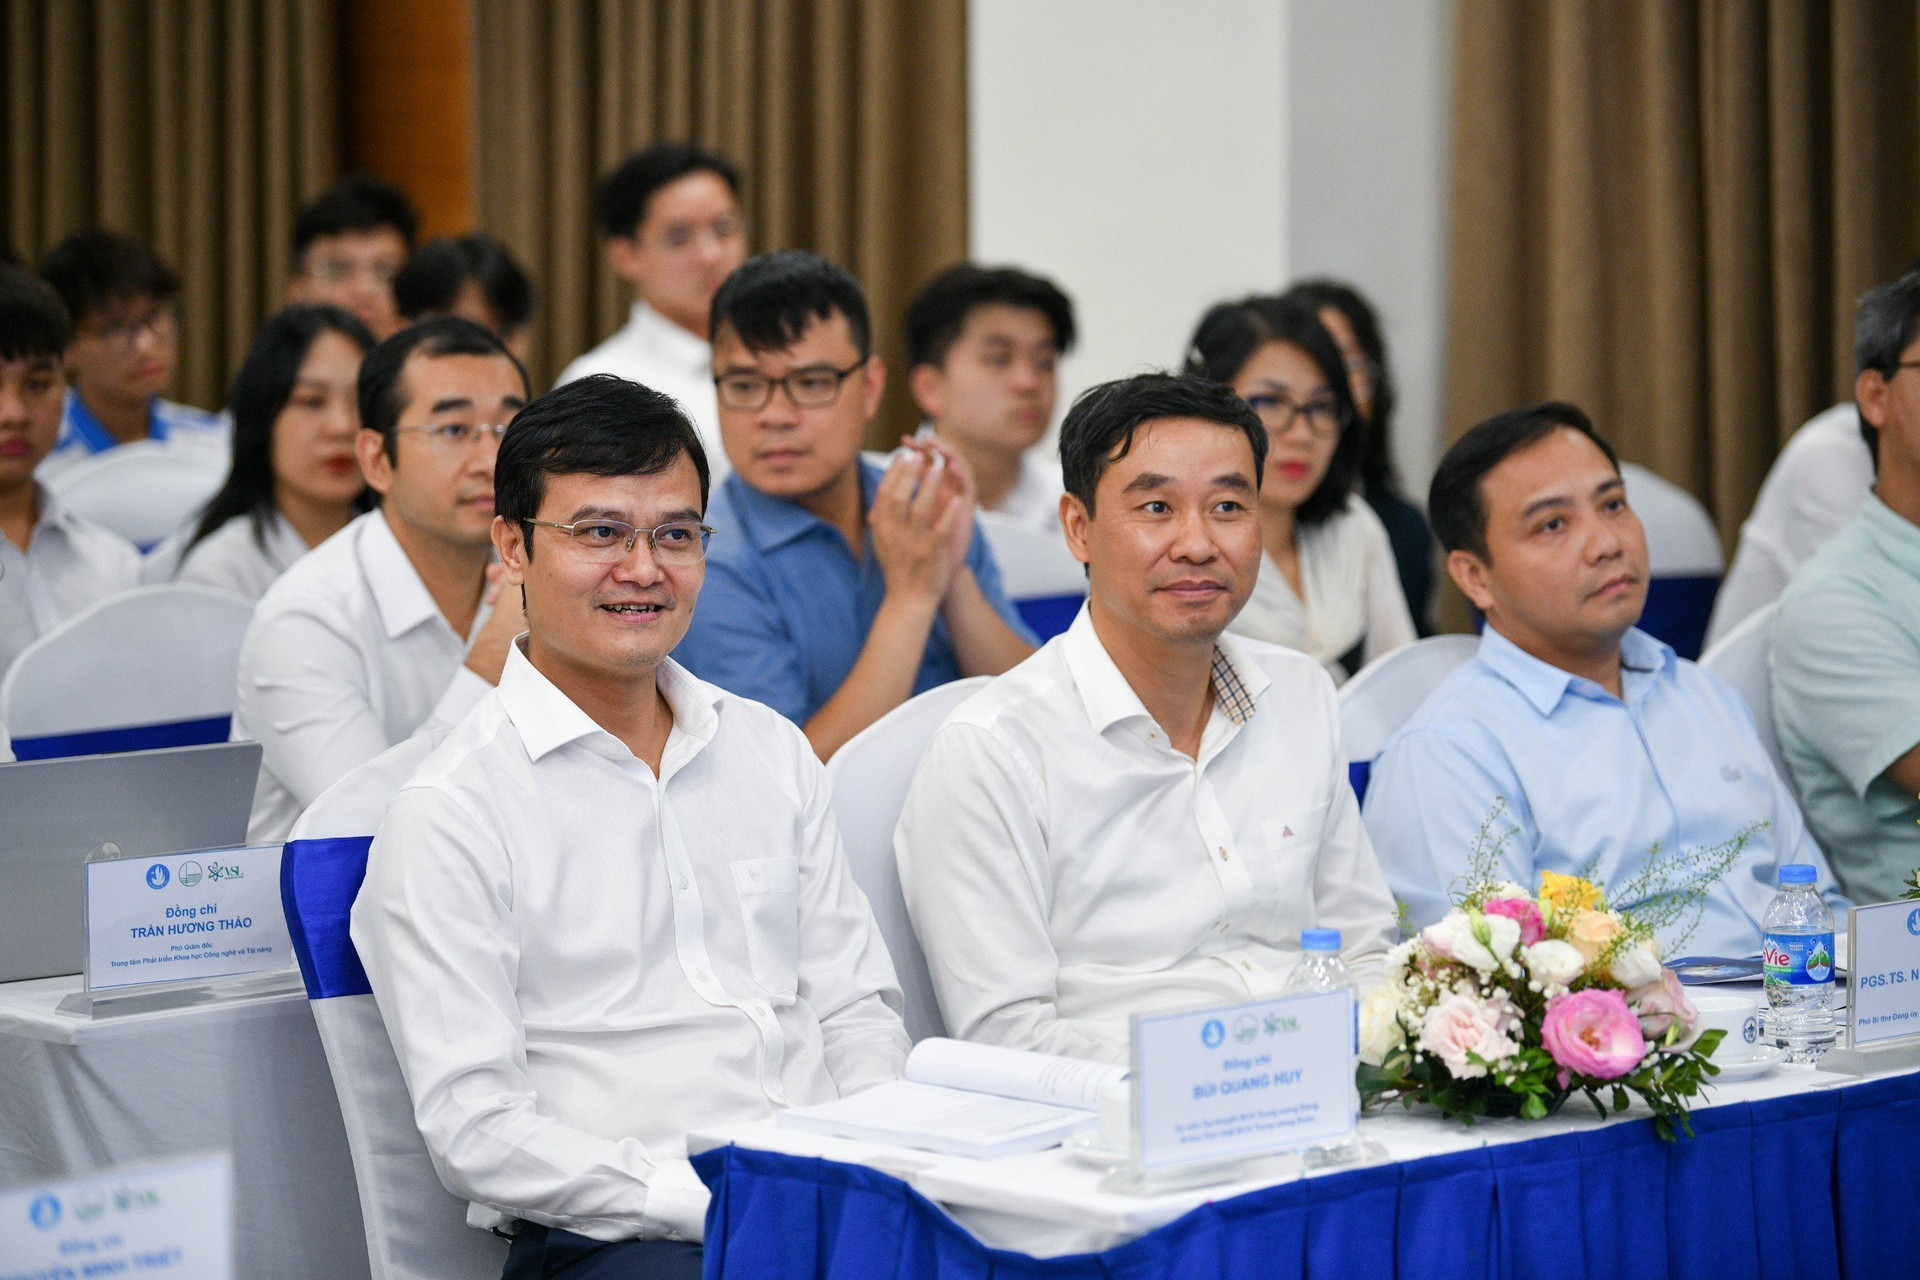 Bí thư thứ nhất T.Ư Đoàn Bùi Quang Huy (bên trái) và các đại biểu dự Hội thảo Khoa học trẻ Việt Nam toàn cầu lần thứ II.